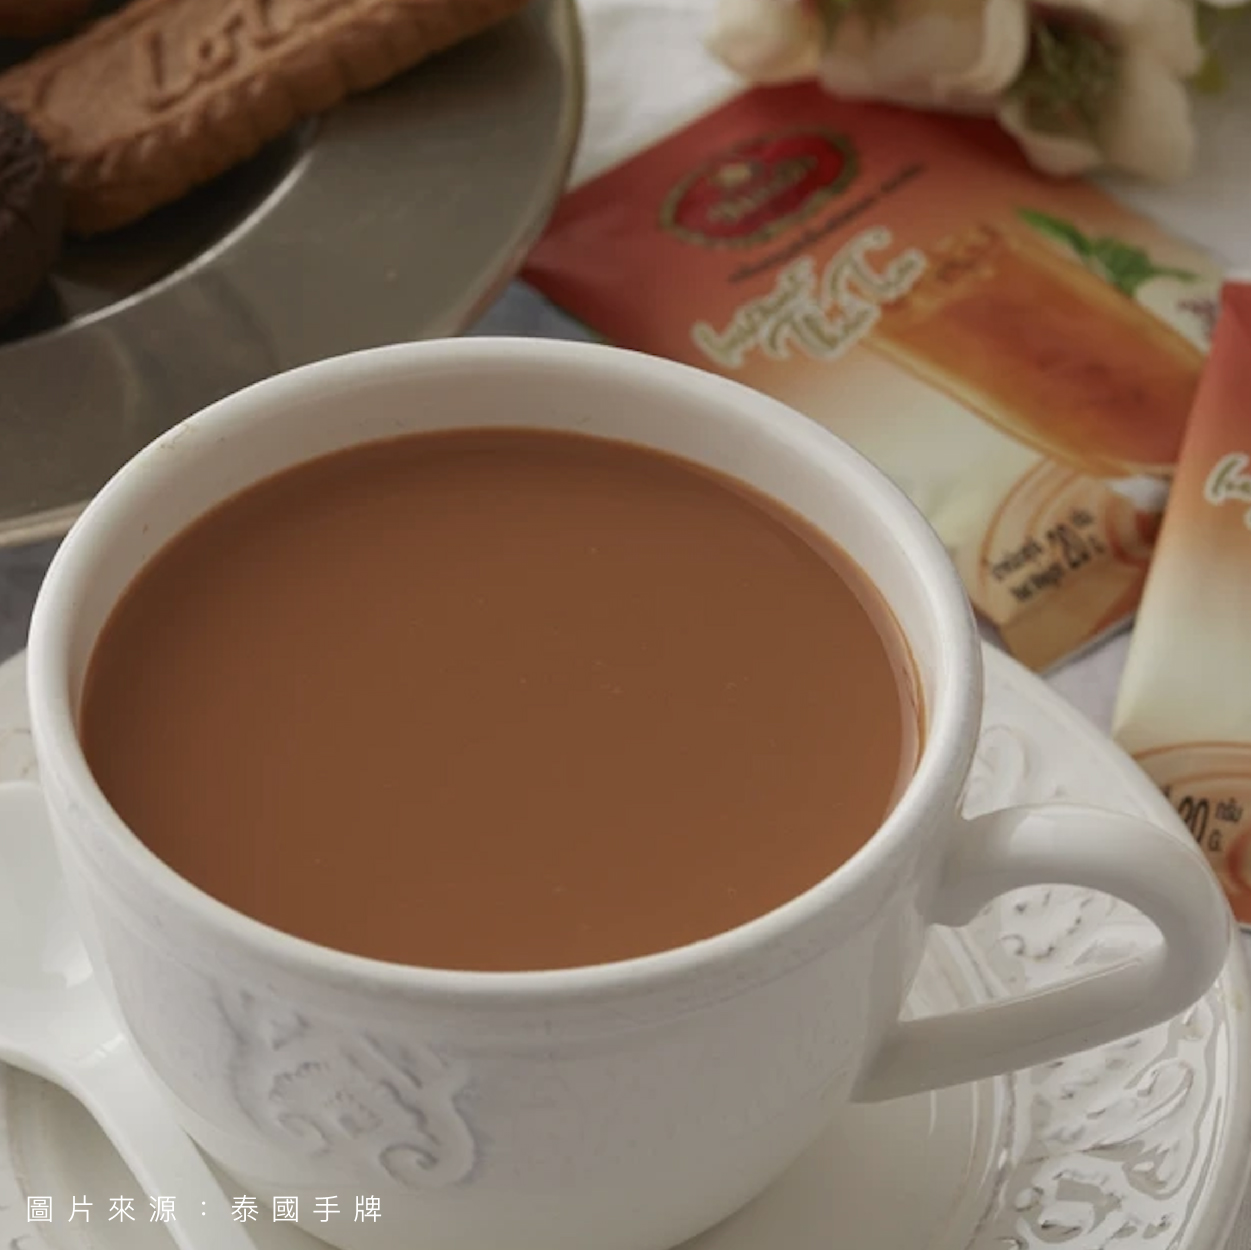 泰國手標 三合一泰式奶茶隨身包 再忙也能抽空喝杯奶茶